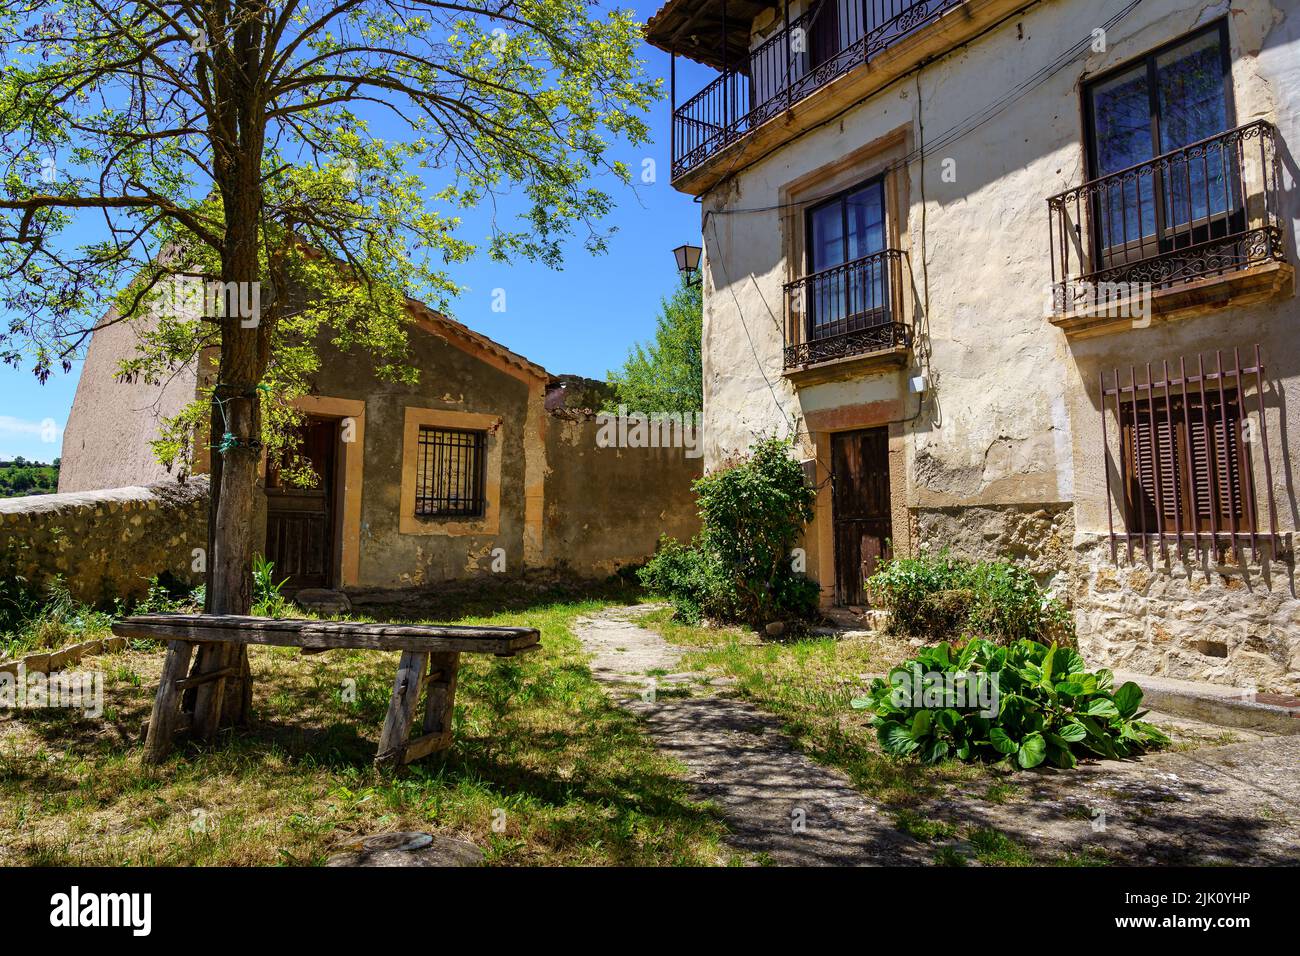 Facciata di vecchie case con piccolo giardino con vecchia panca in legno. Sepulveda Spagna. Foto Stock